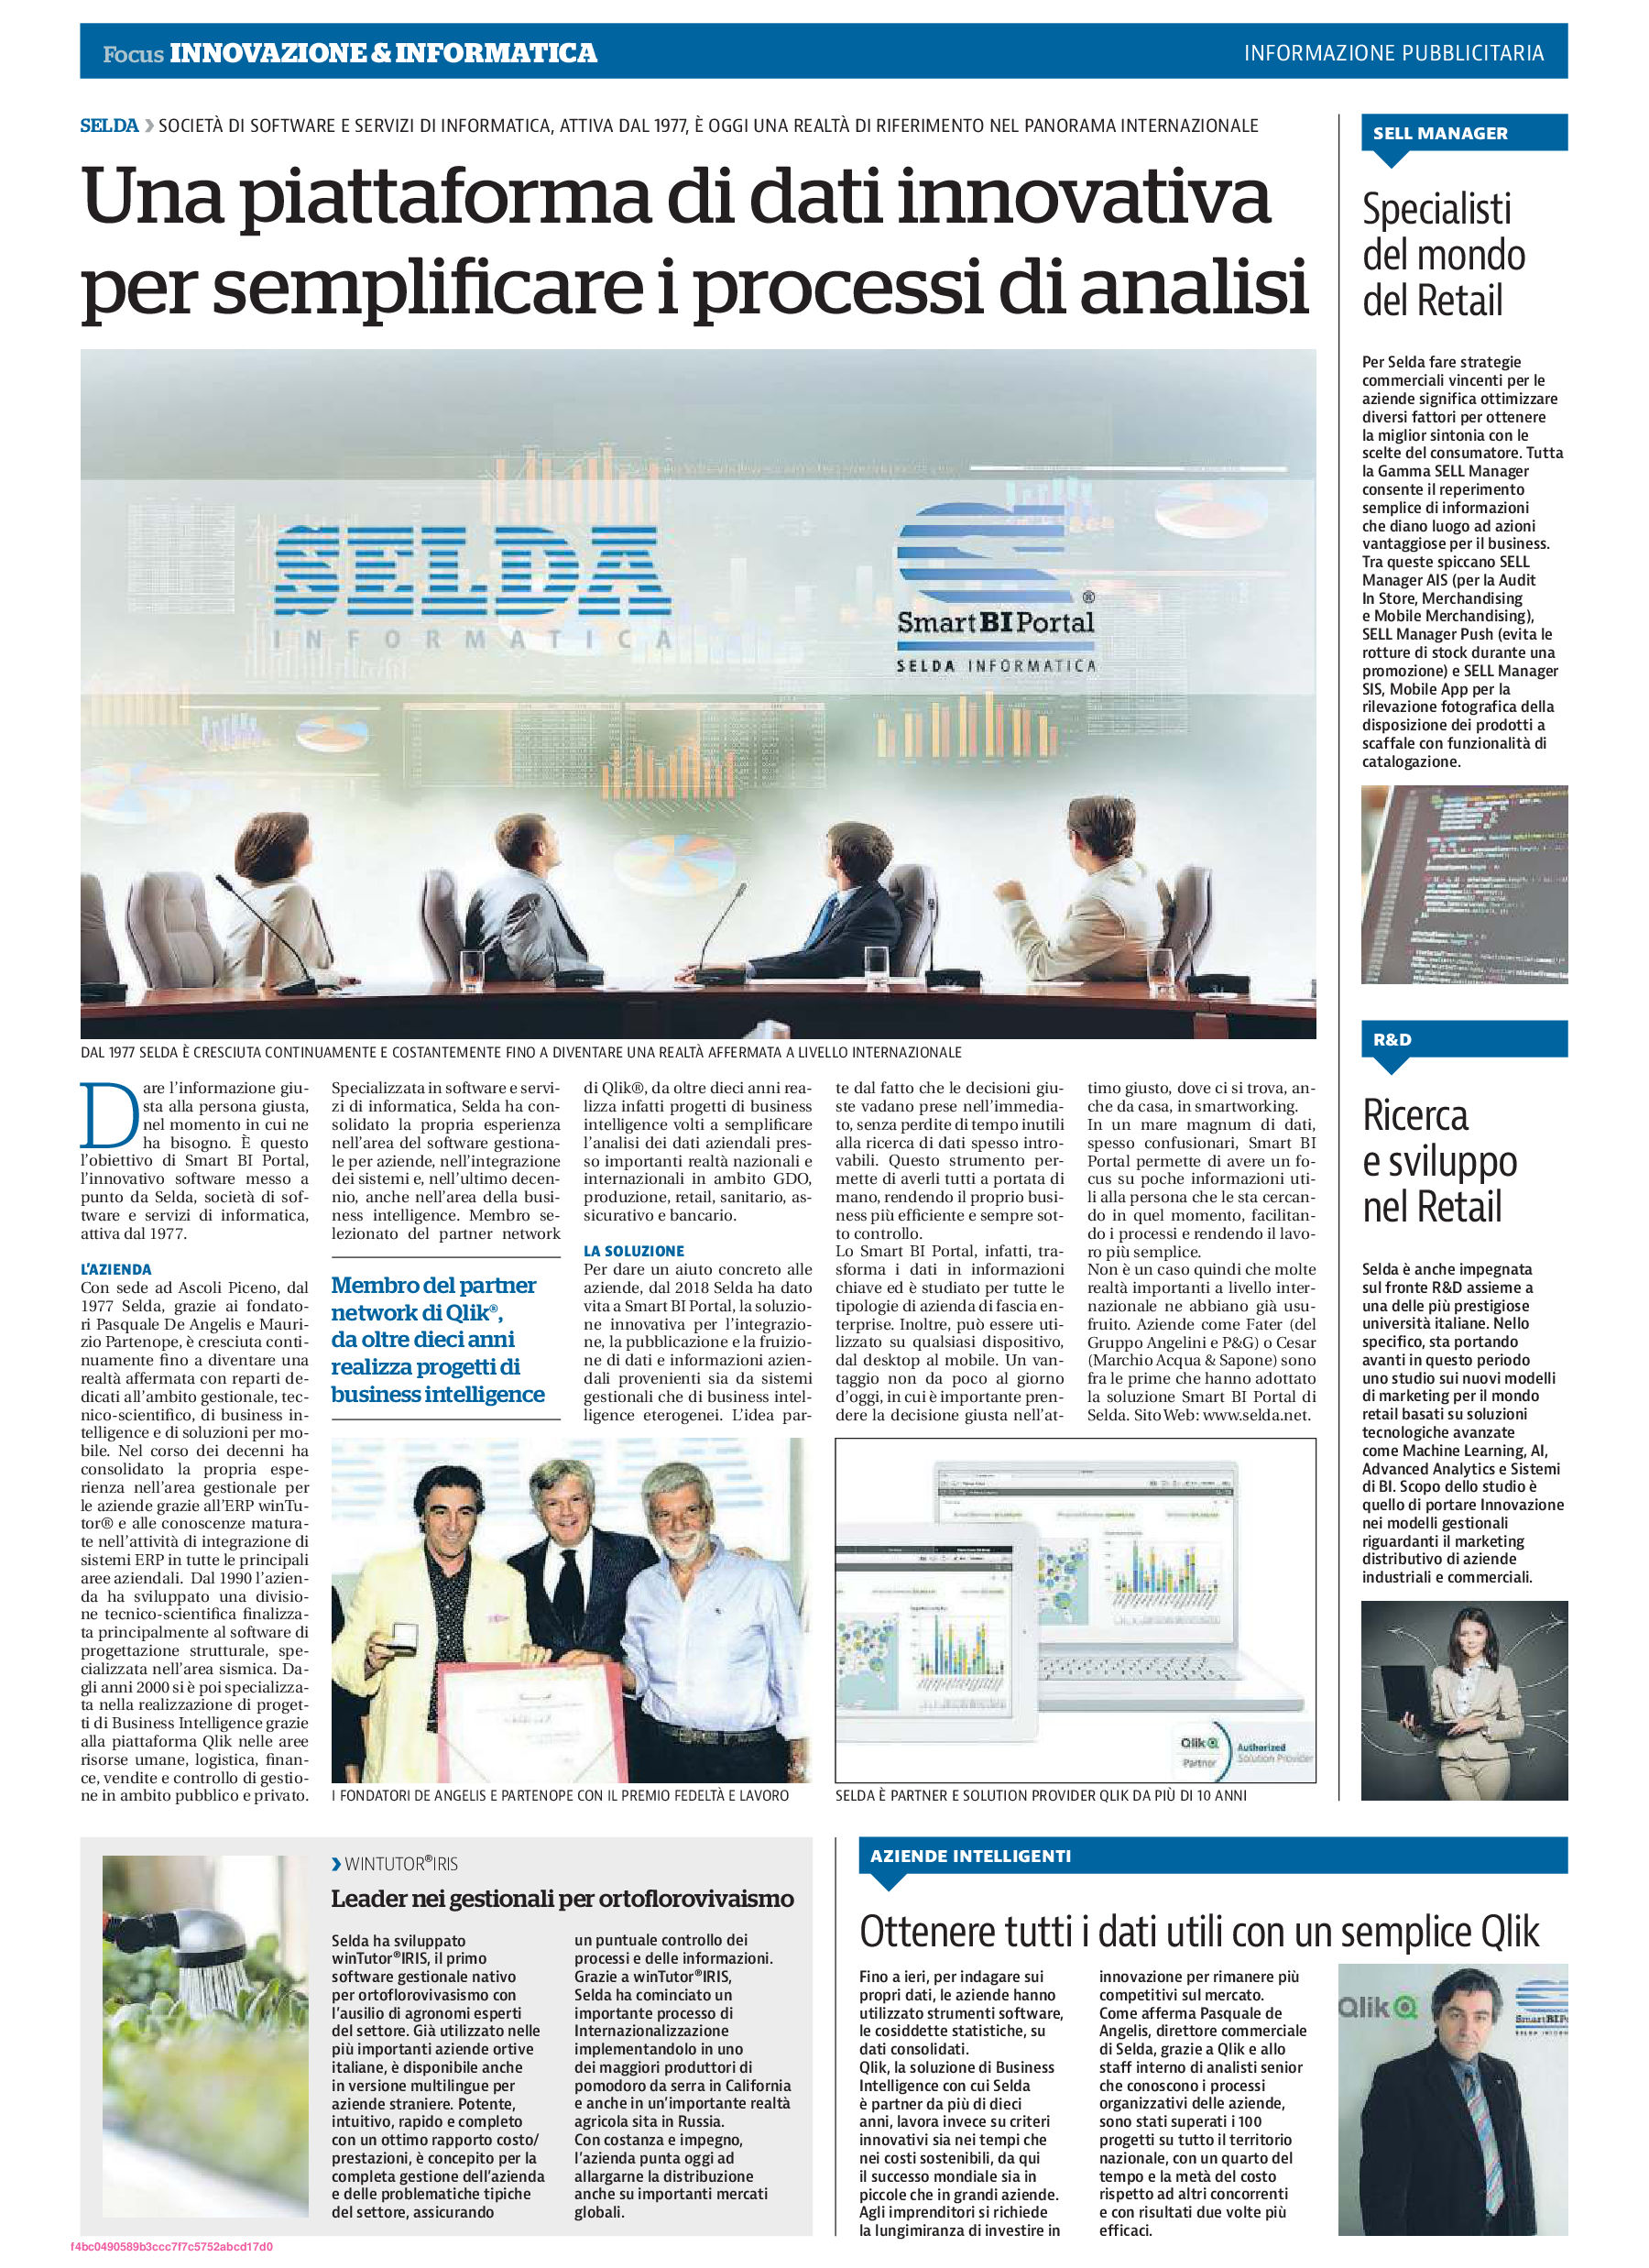 Focus "Innovazione e Informatica" - La Repubblica SELDA Informatica